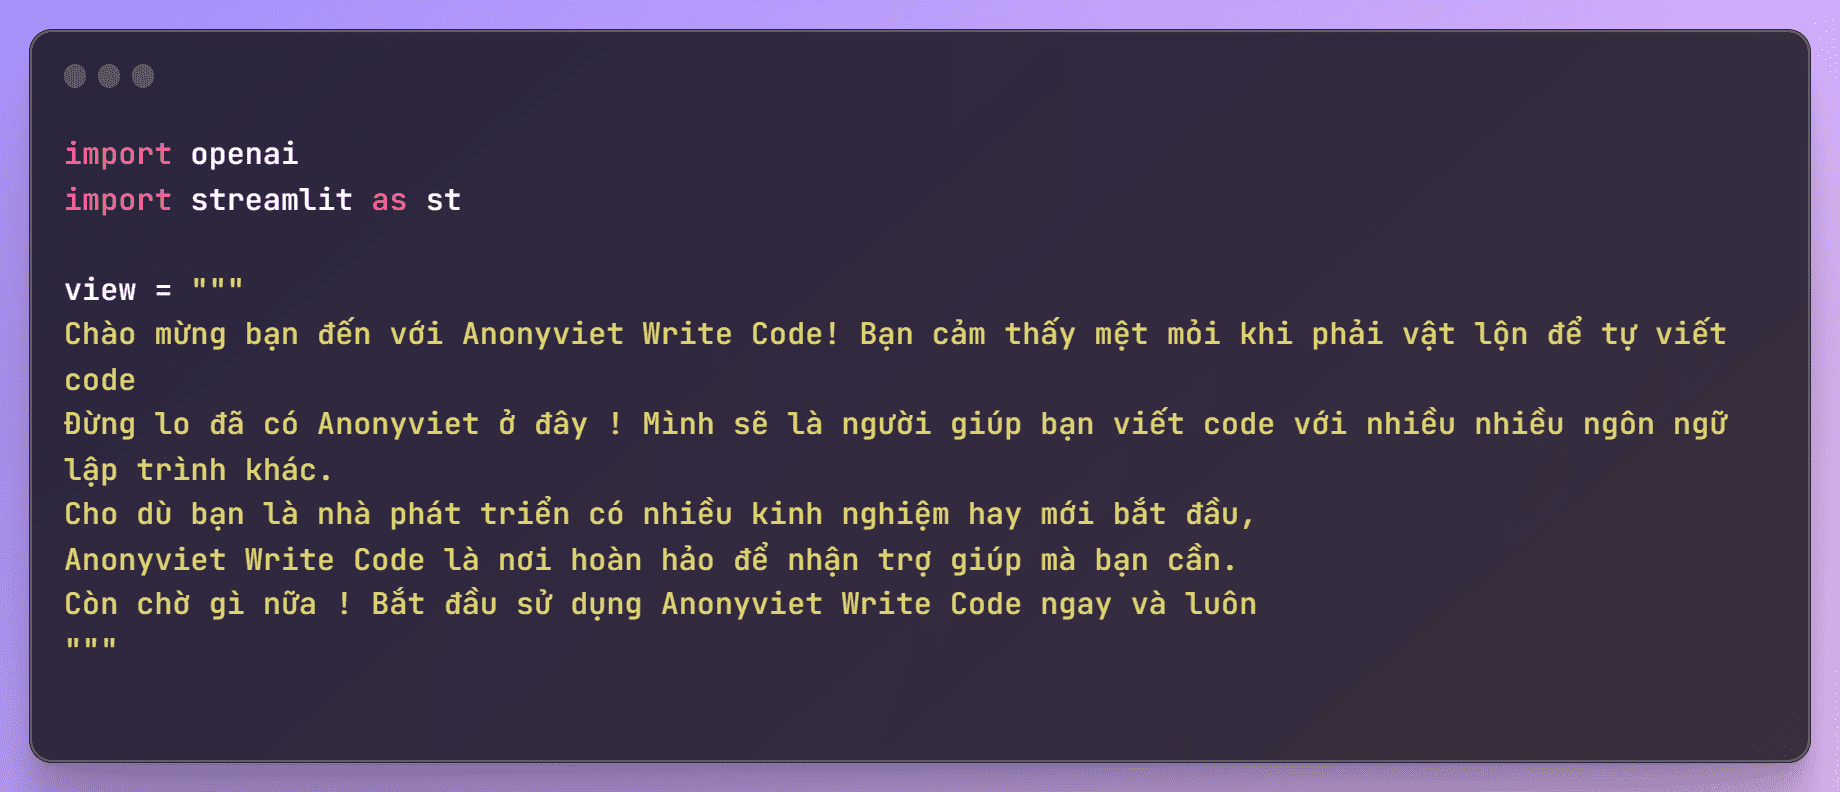 Cách tạo Web App Chatbot viết code tự động bằng Python